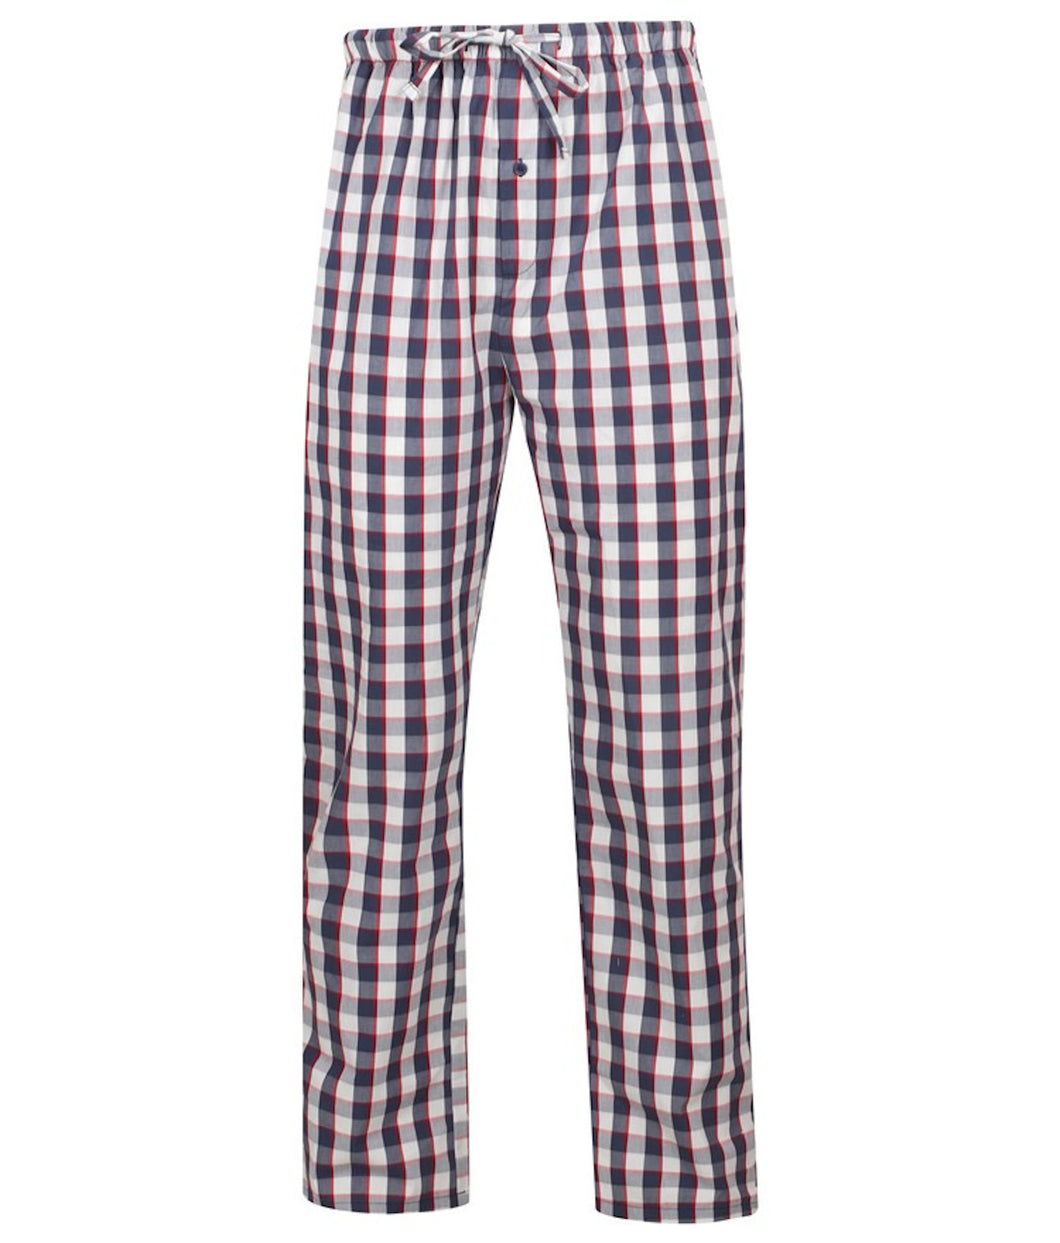 Walker Reid Mens Navy Check Pyjama Bottoms (Medium - XXXL)